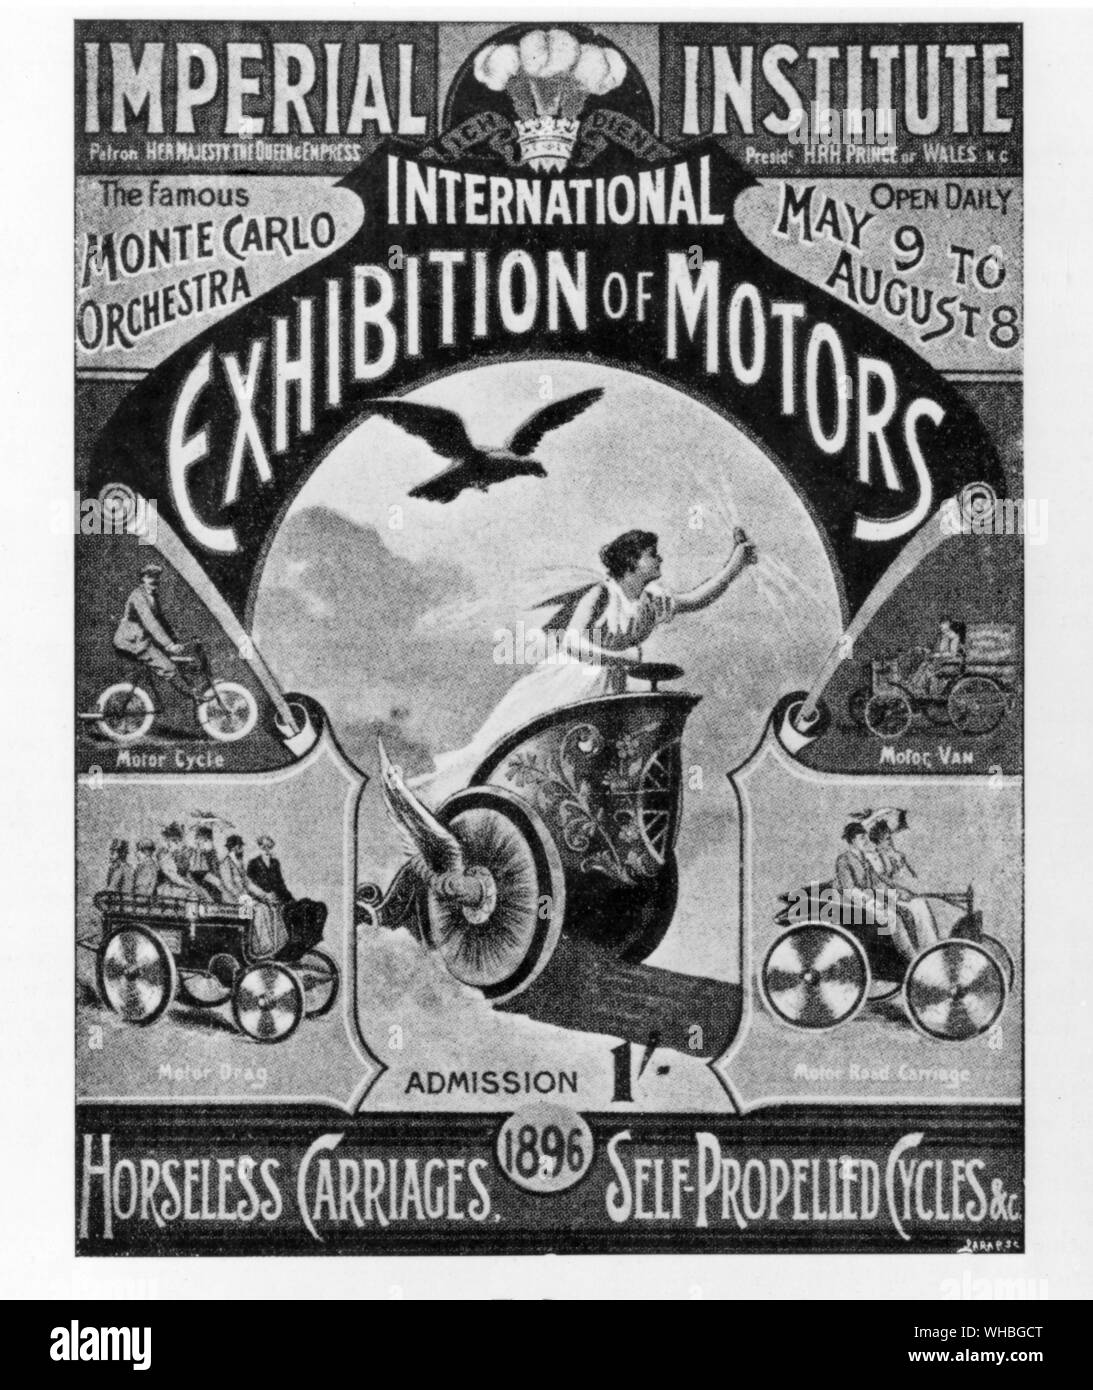 - Salon International de l'Institut impérial de moteurs Poster : Chariots automoteurs sans chevaux , Cycles . 9 mai - 8 août 1896 Banque D'Images